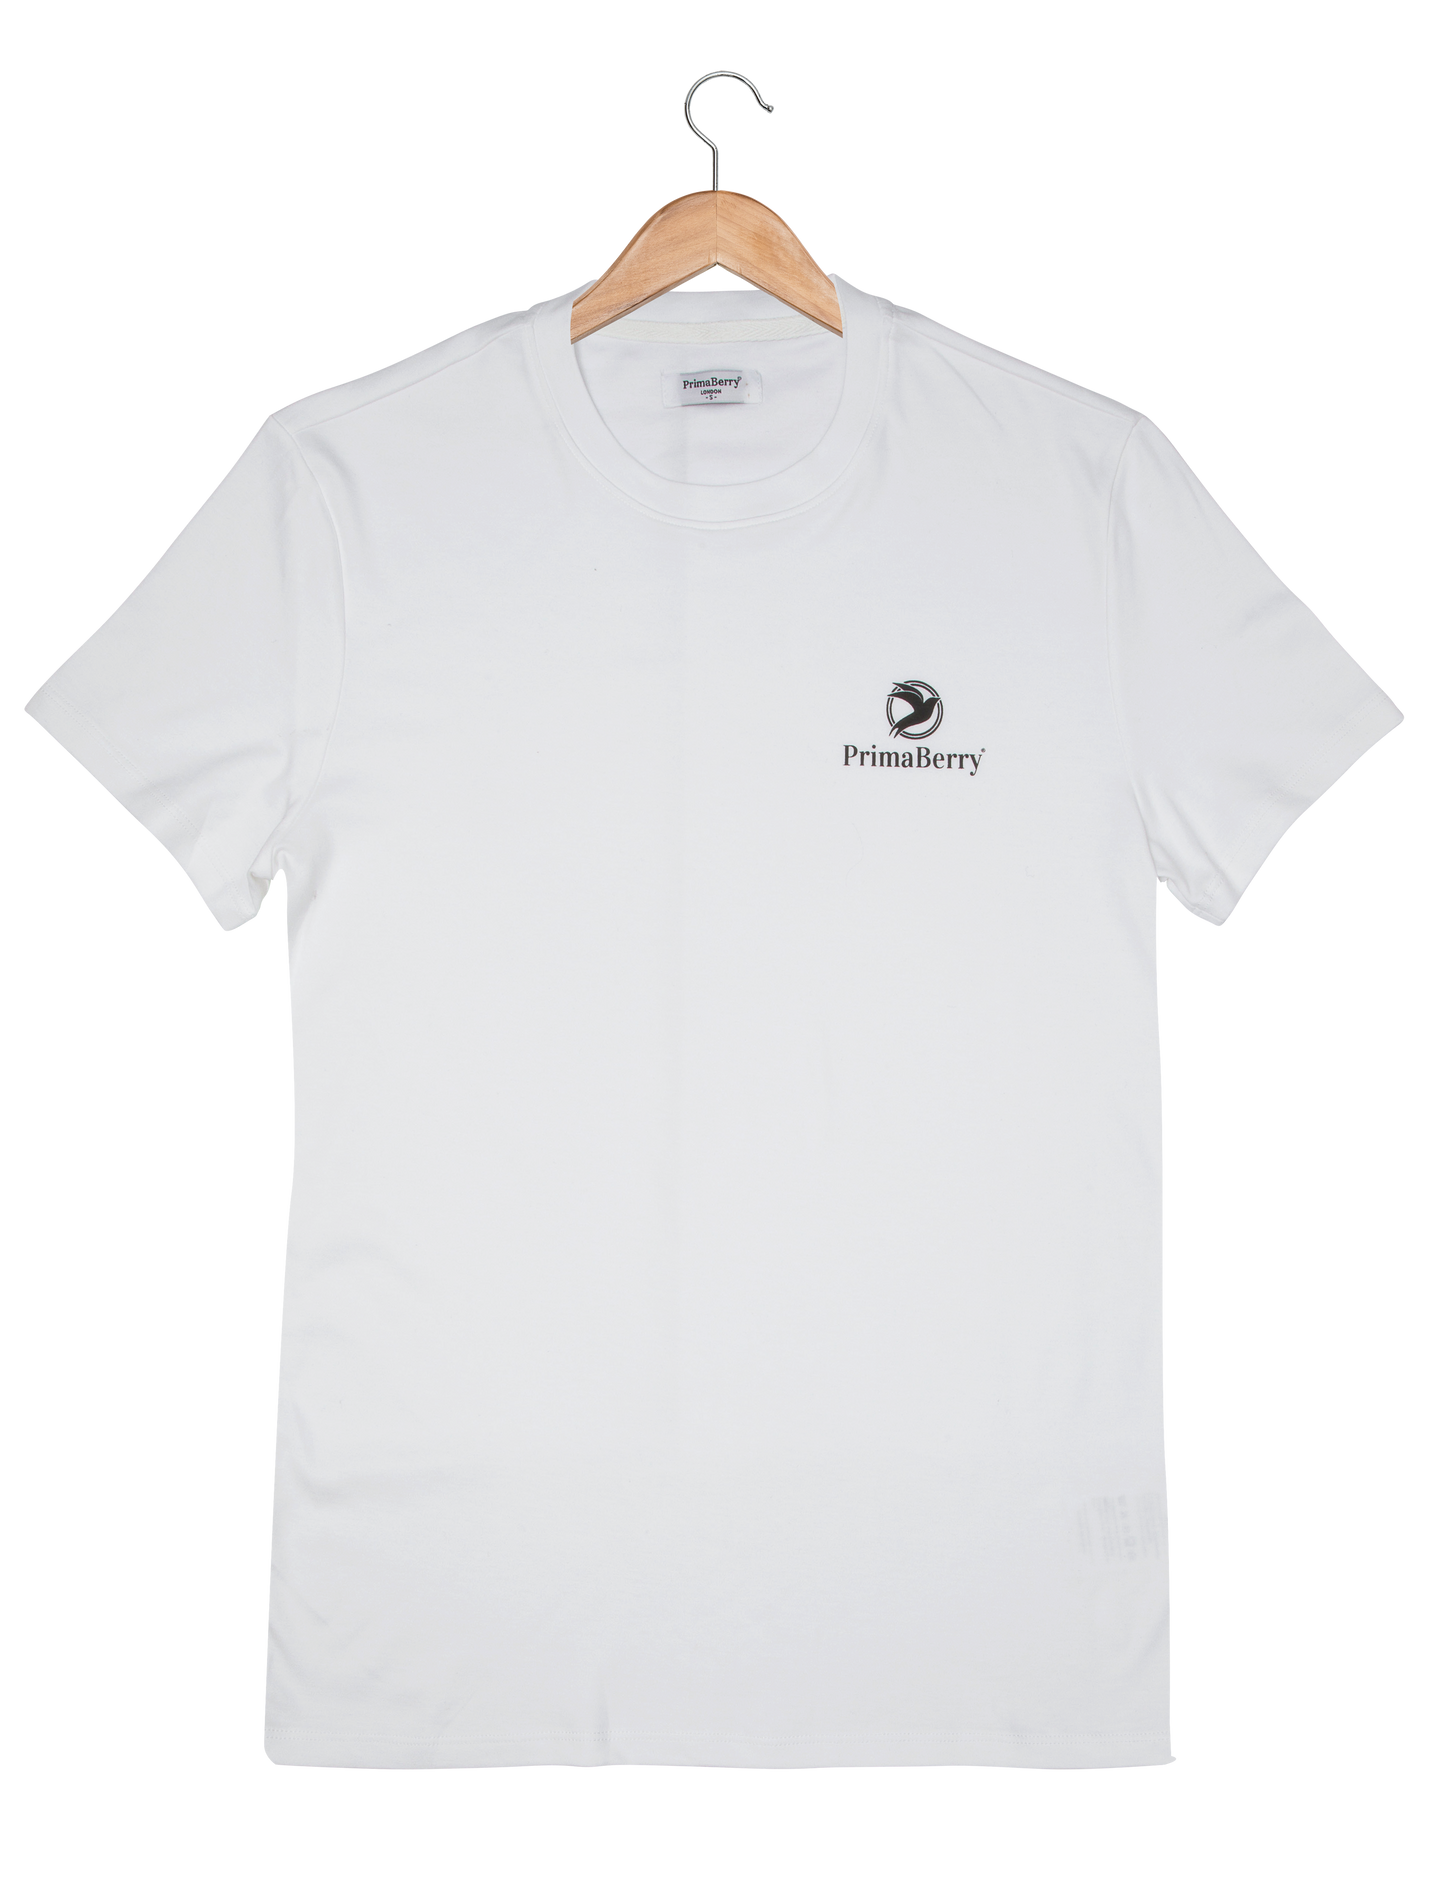 A camiseta minimalista de algodão Pima: camiseta sustentável e elegante feita com algodão Pima premium